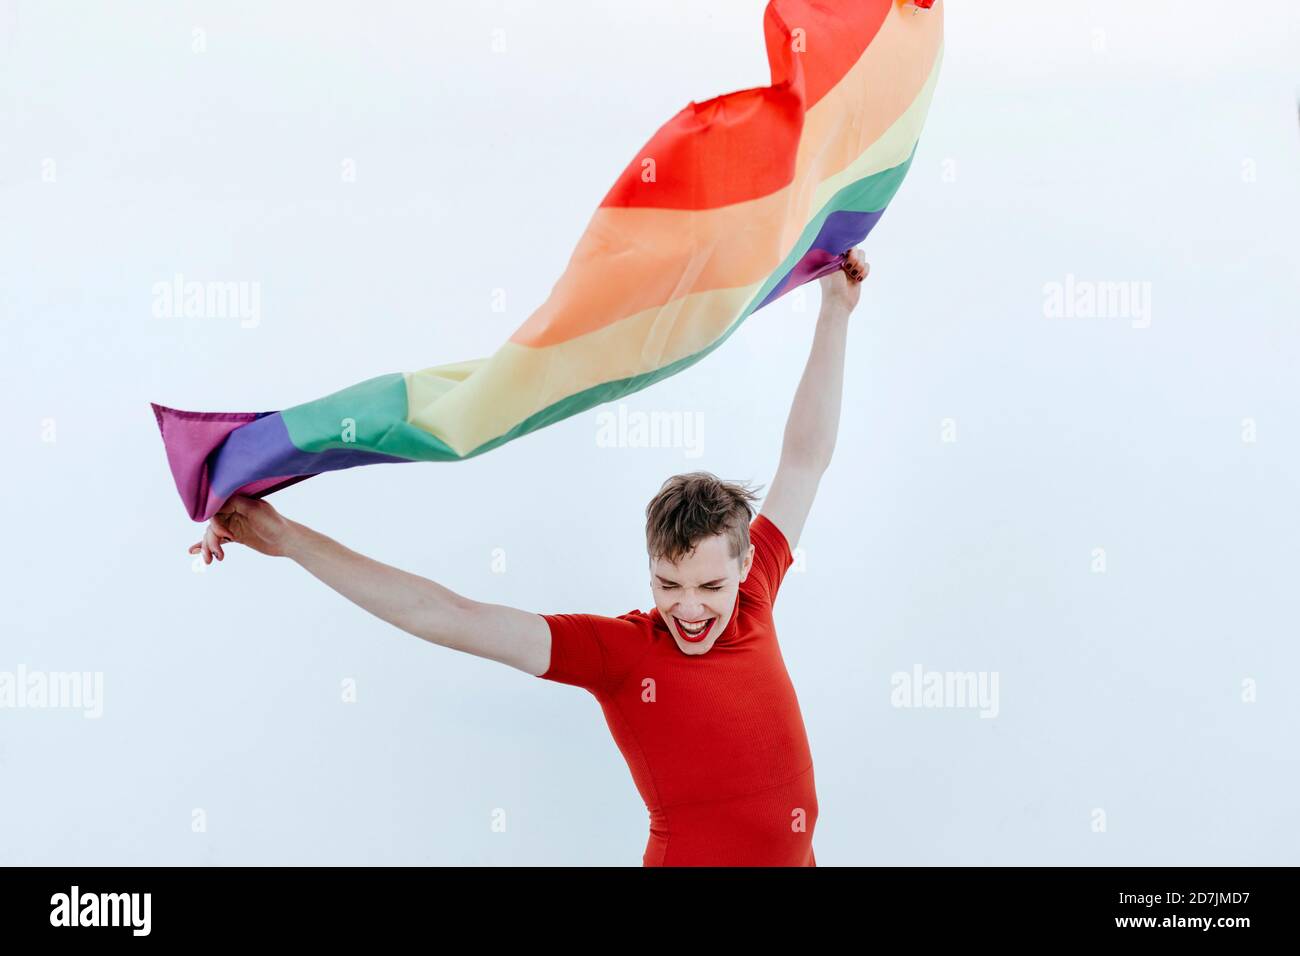 Nicht-binäre Person winkt mehrfarbige Flagge, während sie gegen Weiß steht Wand Stockfoto